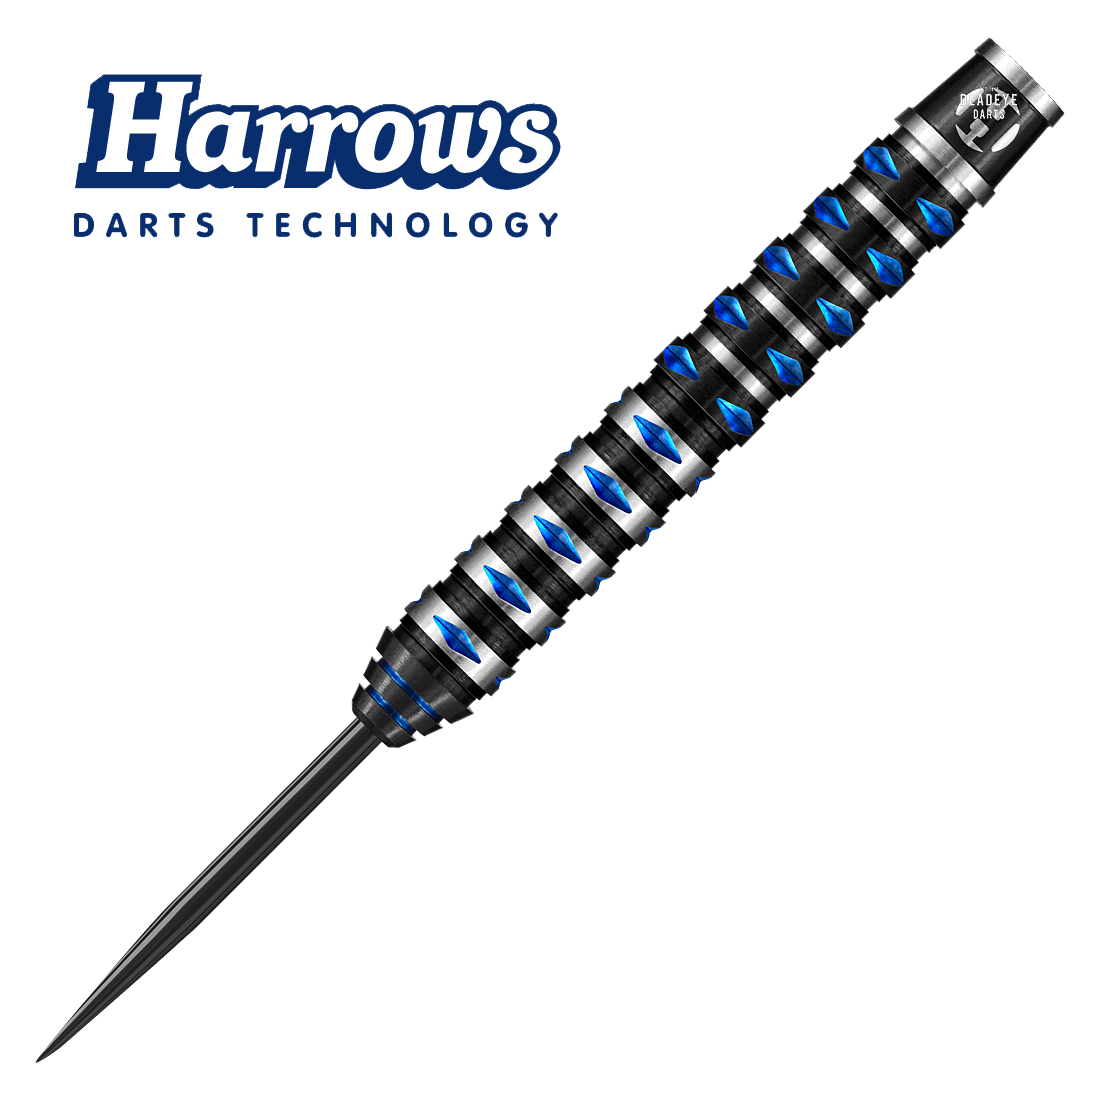 Review of Harrows Paragon 23g Darts